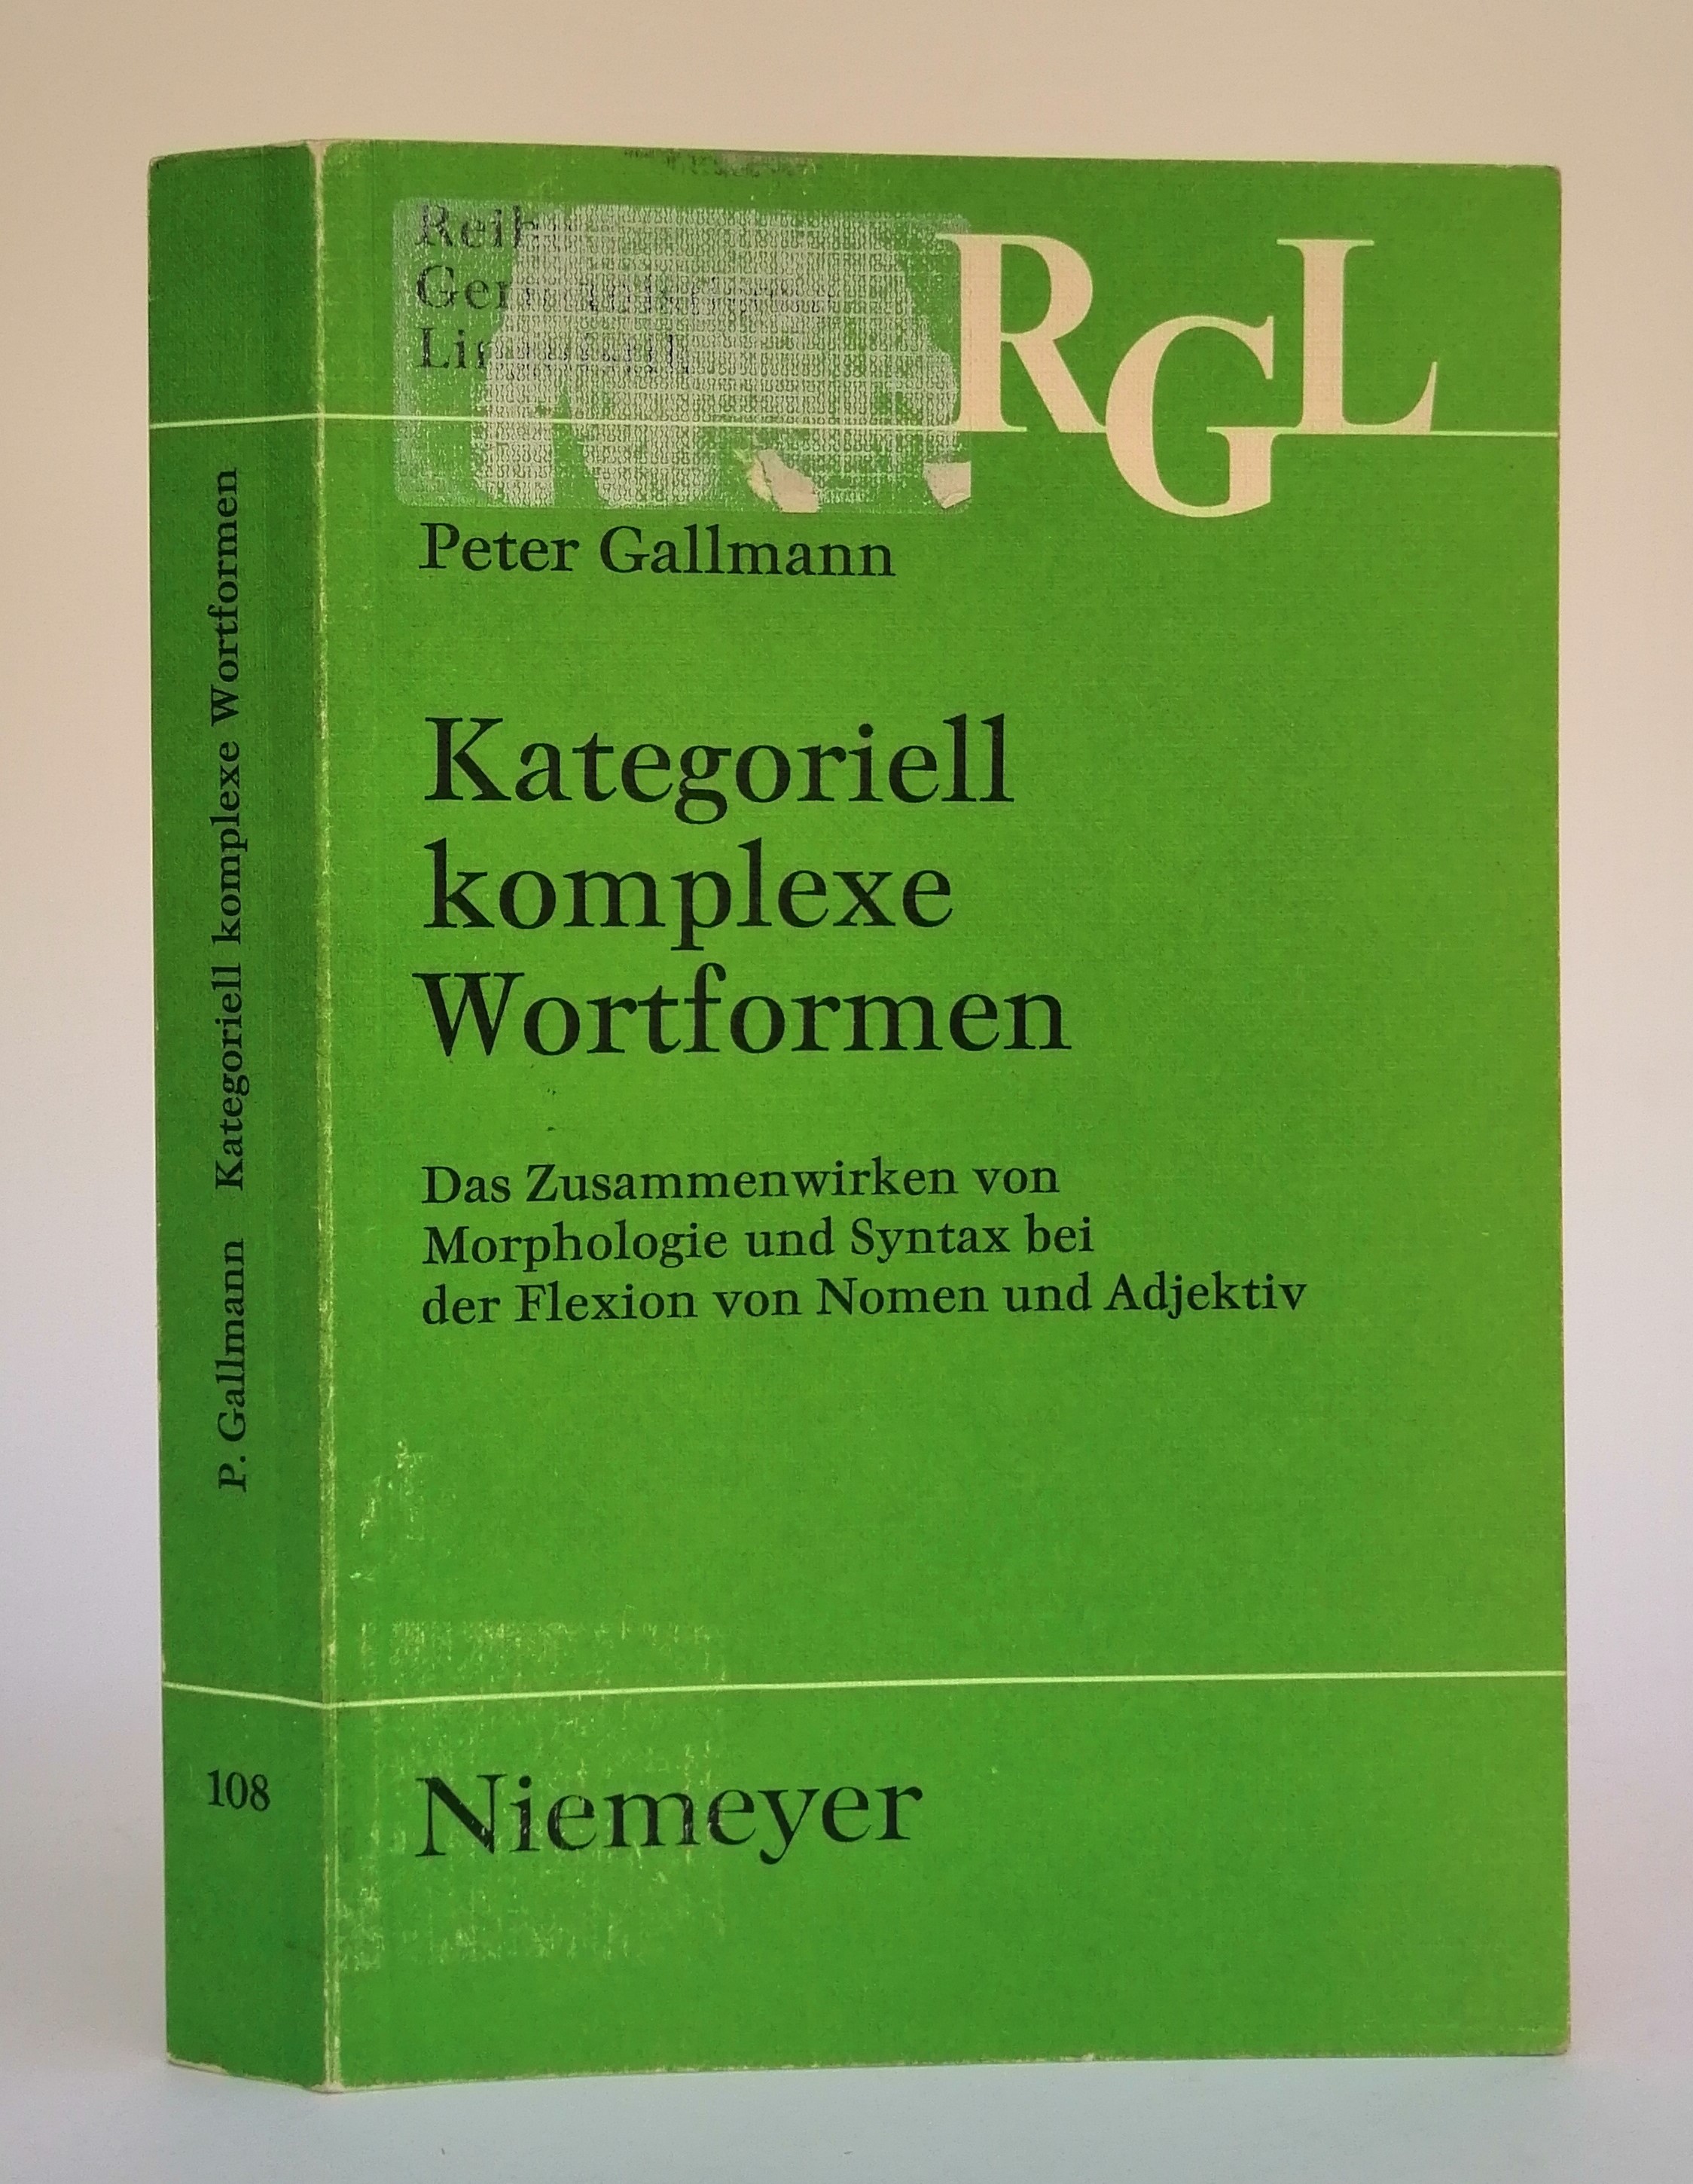 Kategoriell komplexe Wortformen. Das Zusammenwirken von Morphologie und Syntax bei der Flexion von Nomen und Adjektiv. - Gallmann, Peter